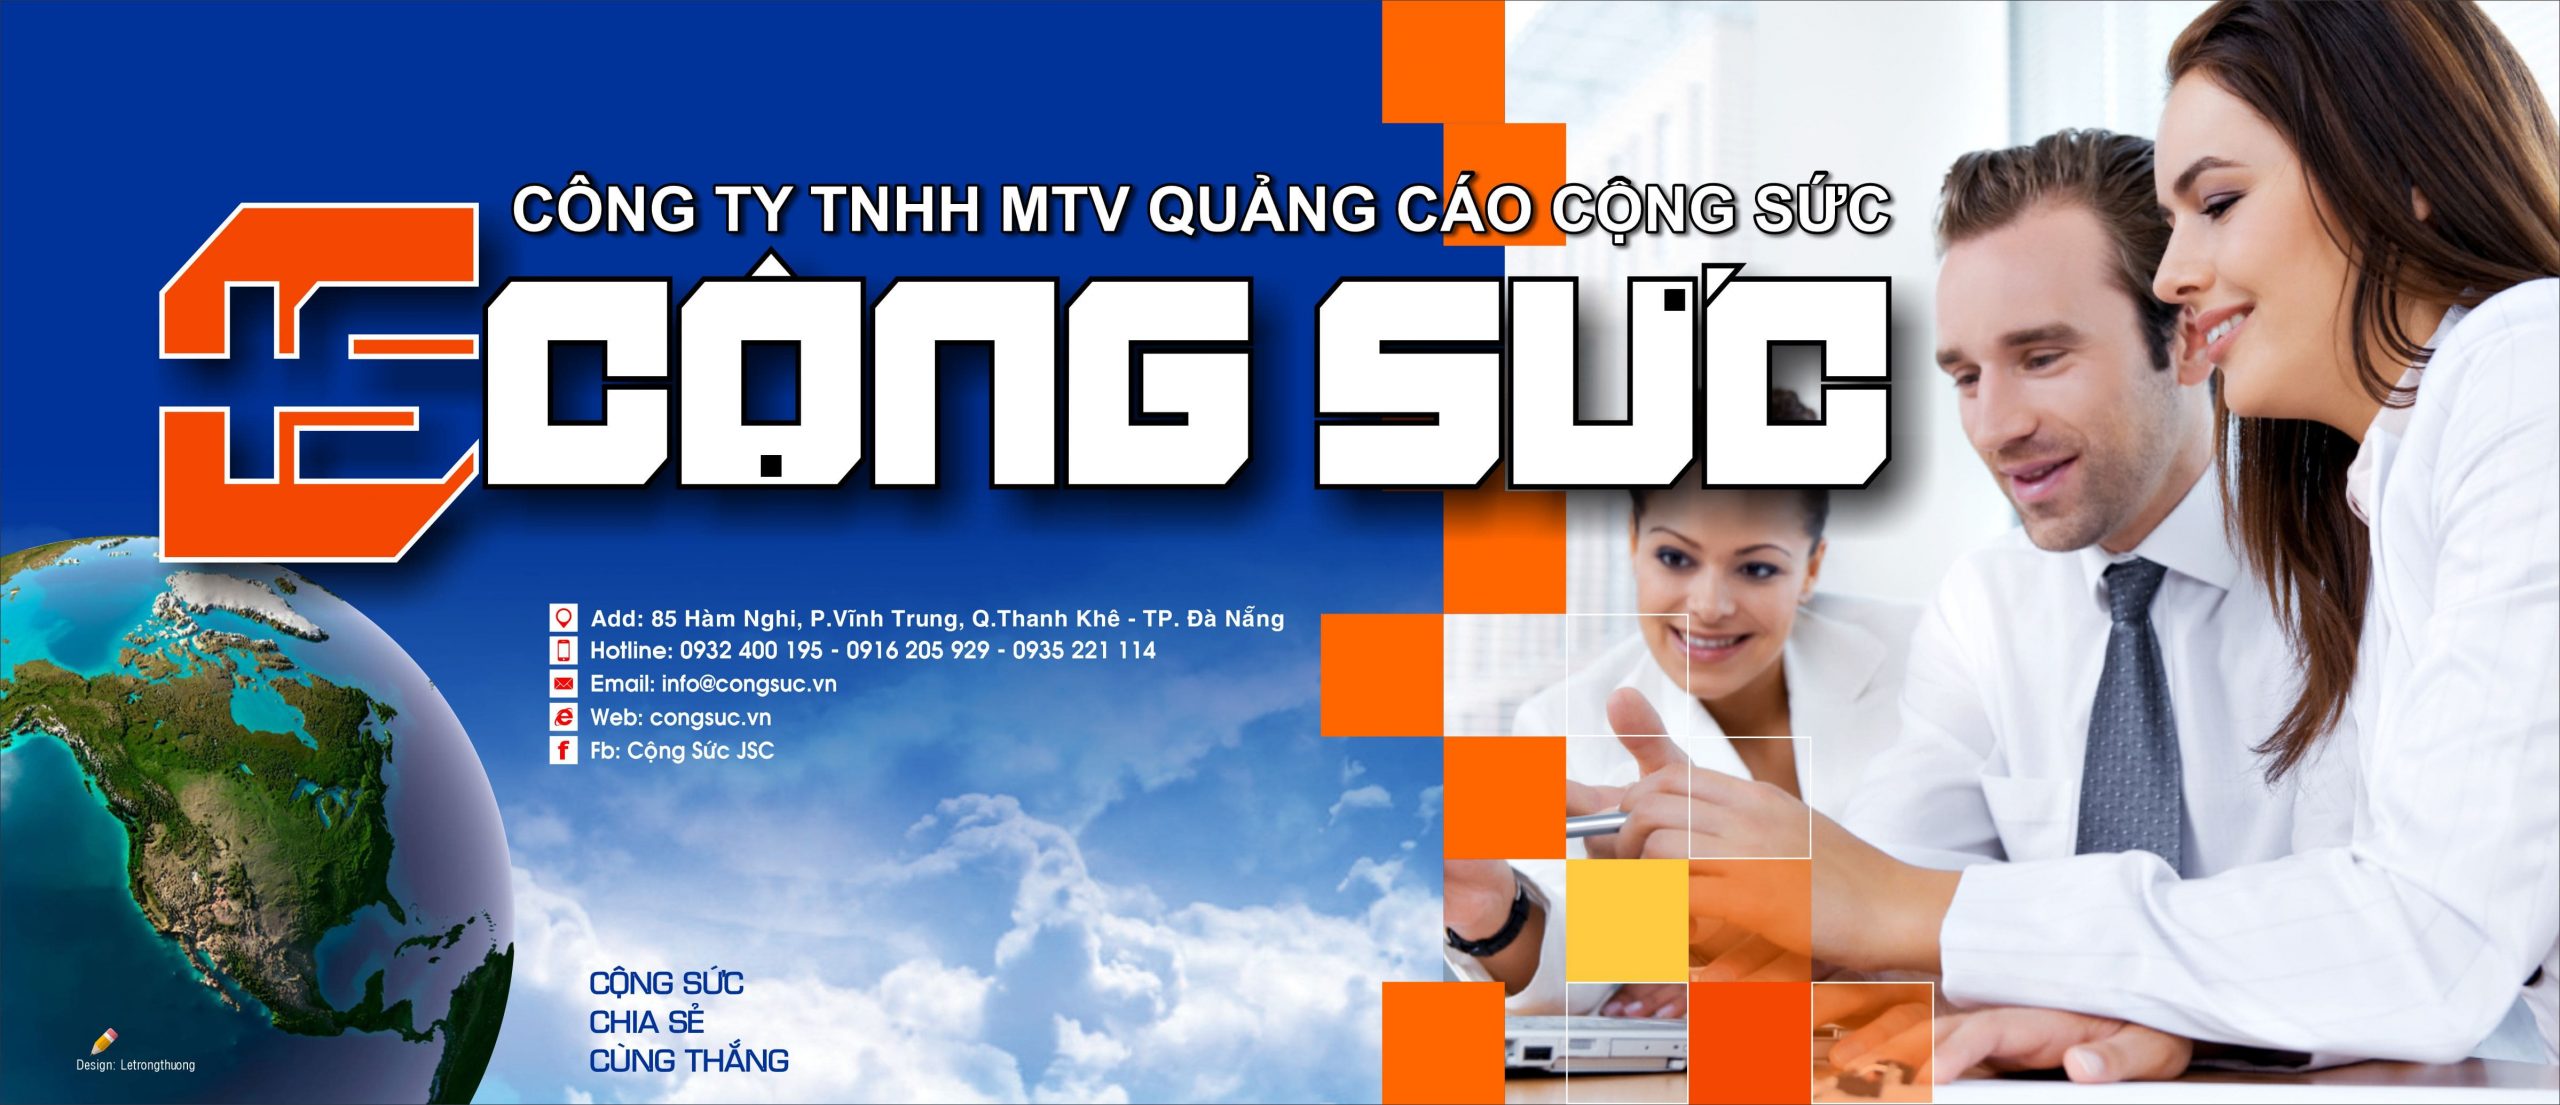 bảng hiệu quảng cáo Đà Nẵng